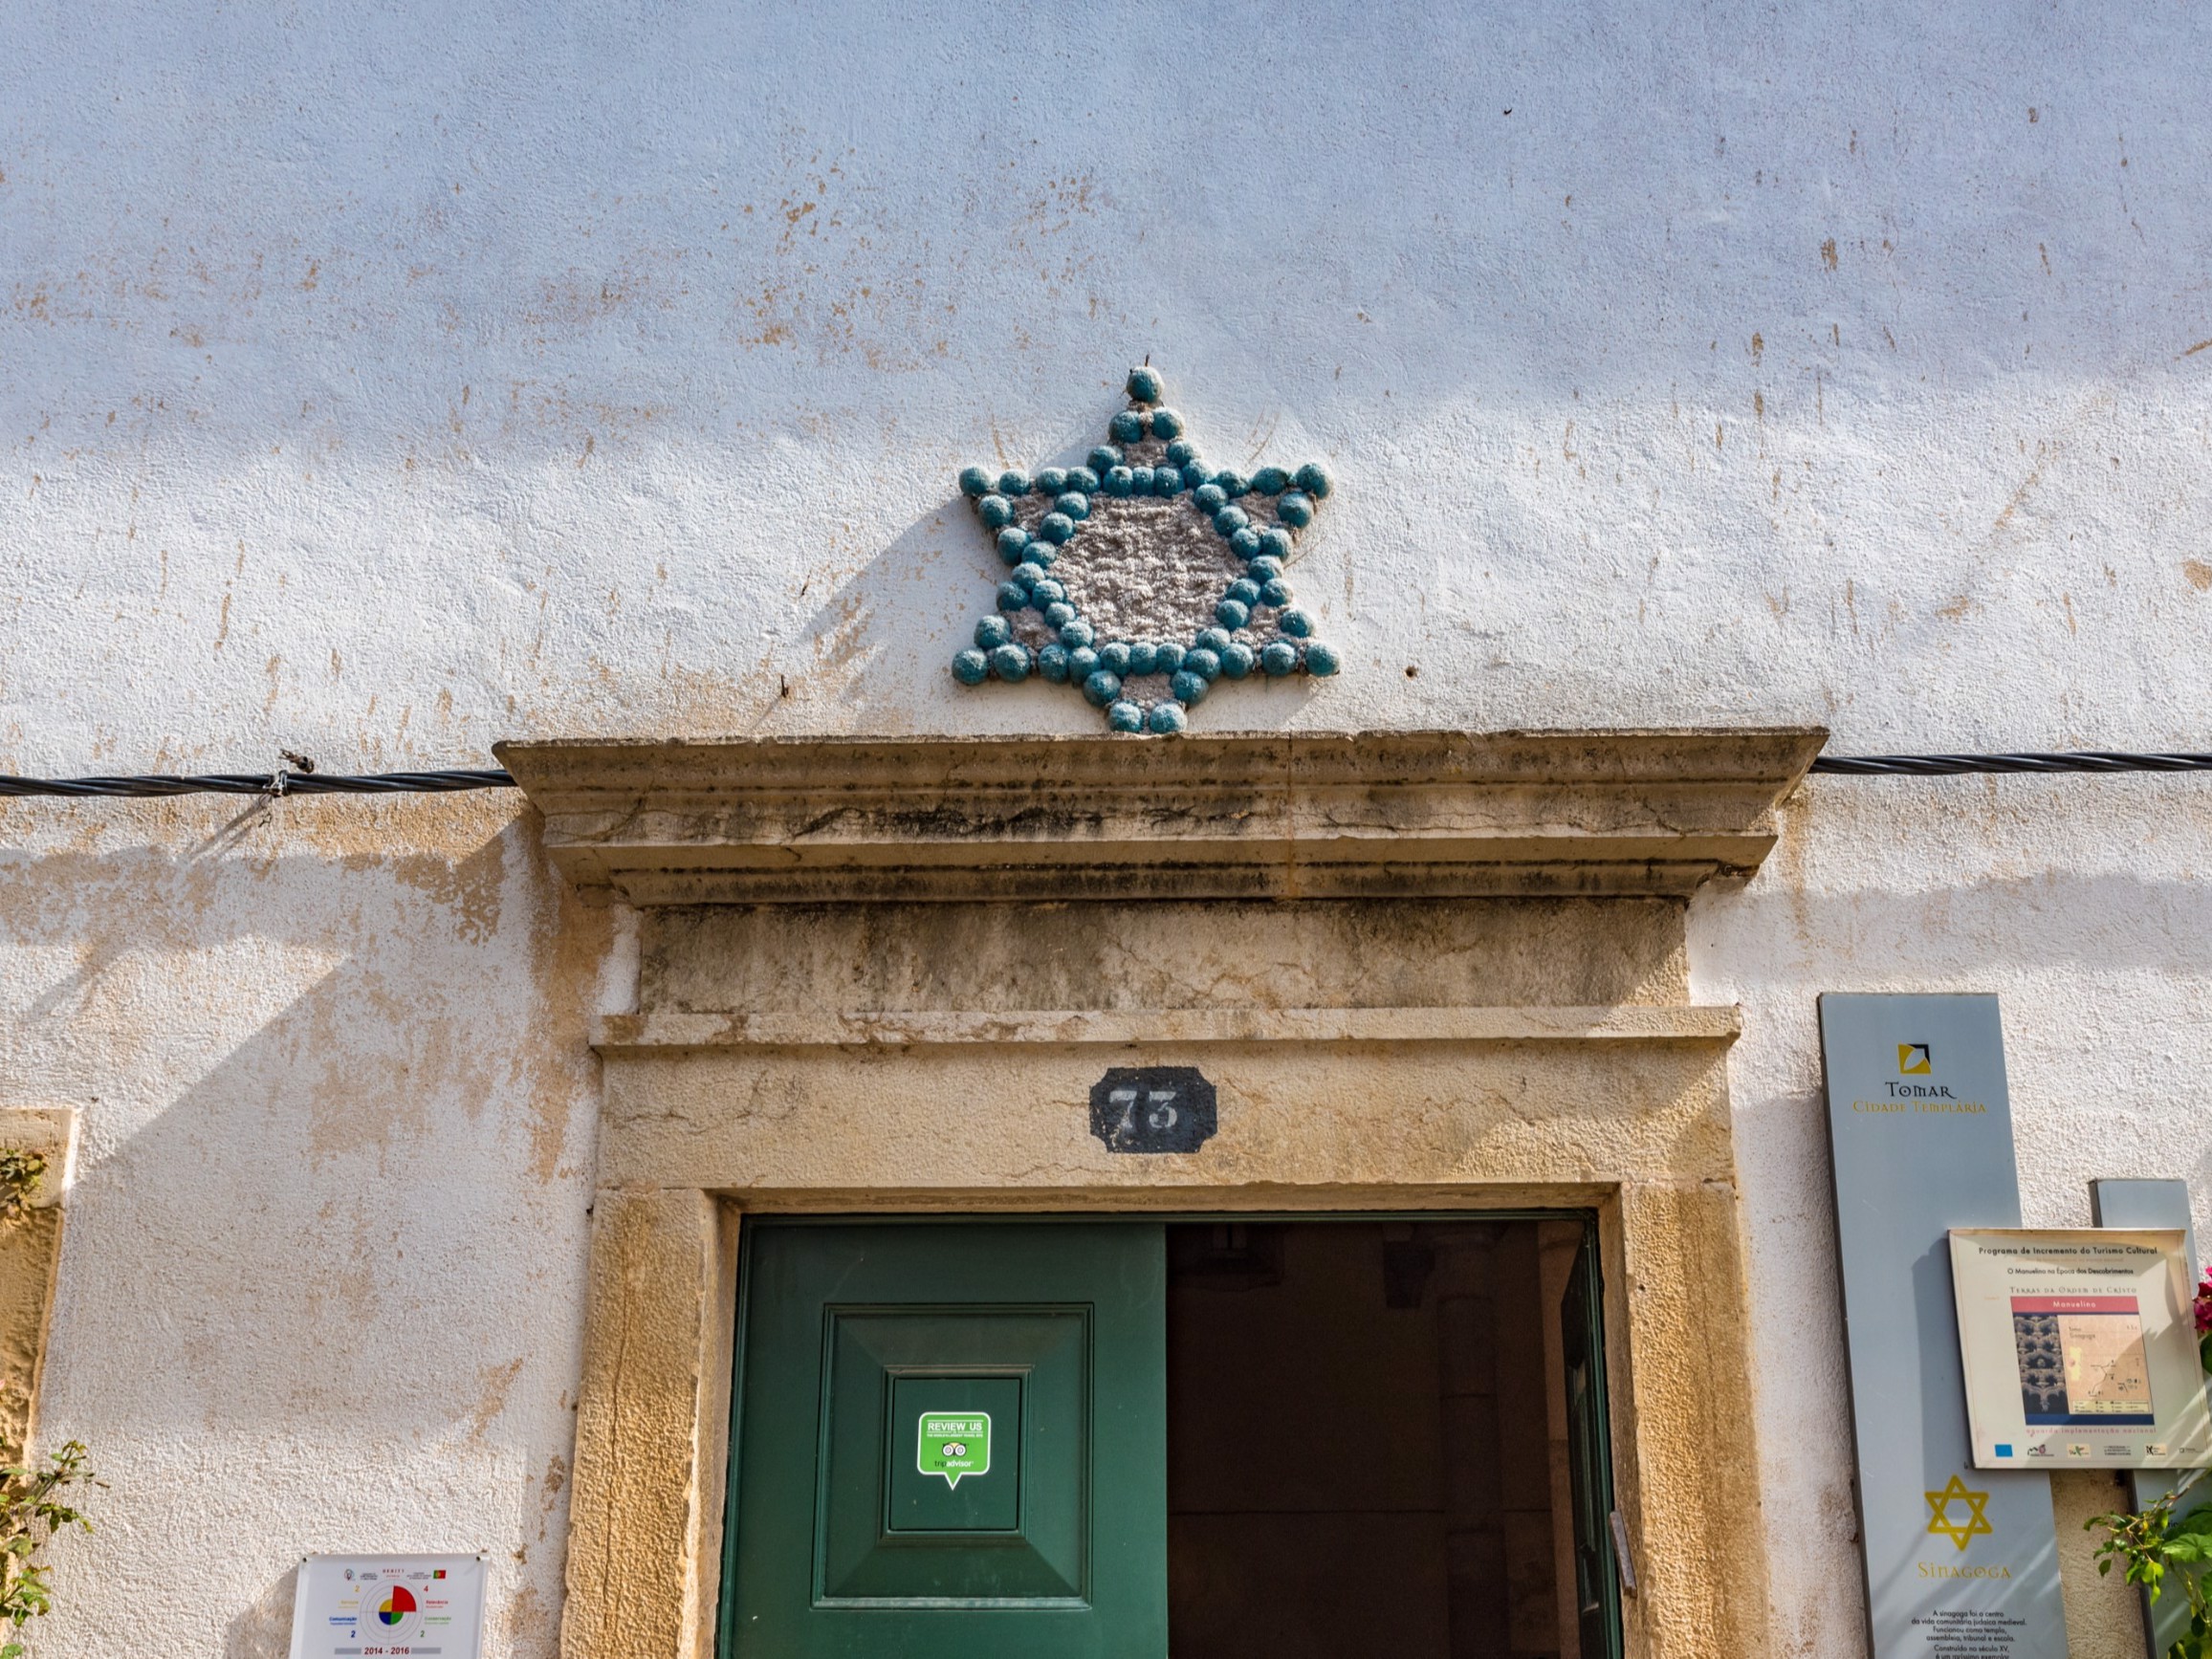 Pormenor - A Sinagoga de Tomar foi construída entre 1430 e 1460, por ordem do Infante D. Henrique, que sempre manteve uma relação de proximidade e mesmo de proteção para com a comunidade judaica, que contribuía generosamente para a grande empresa dos Descobrimentos.